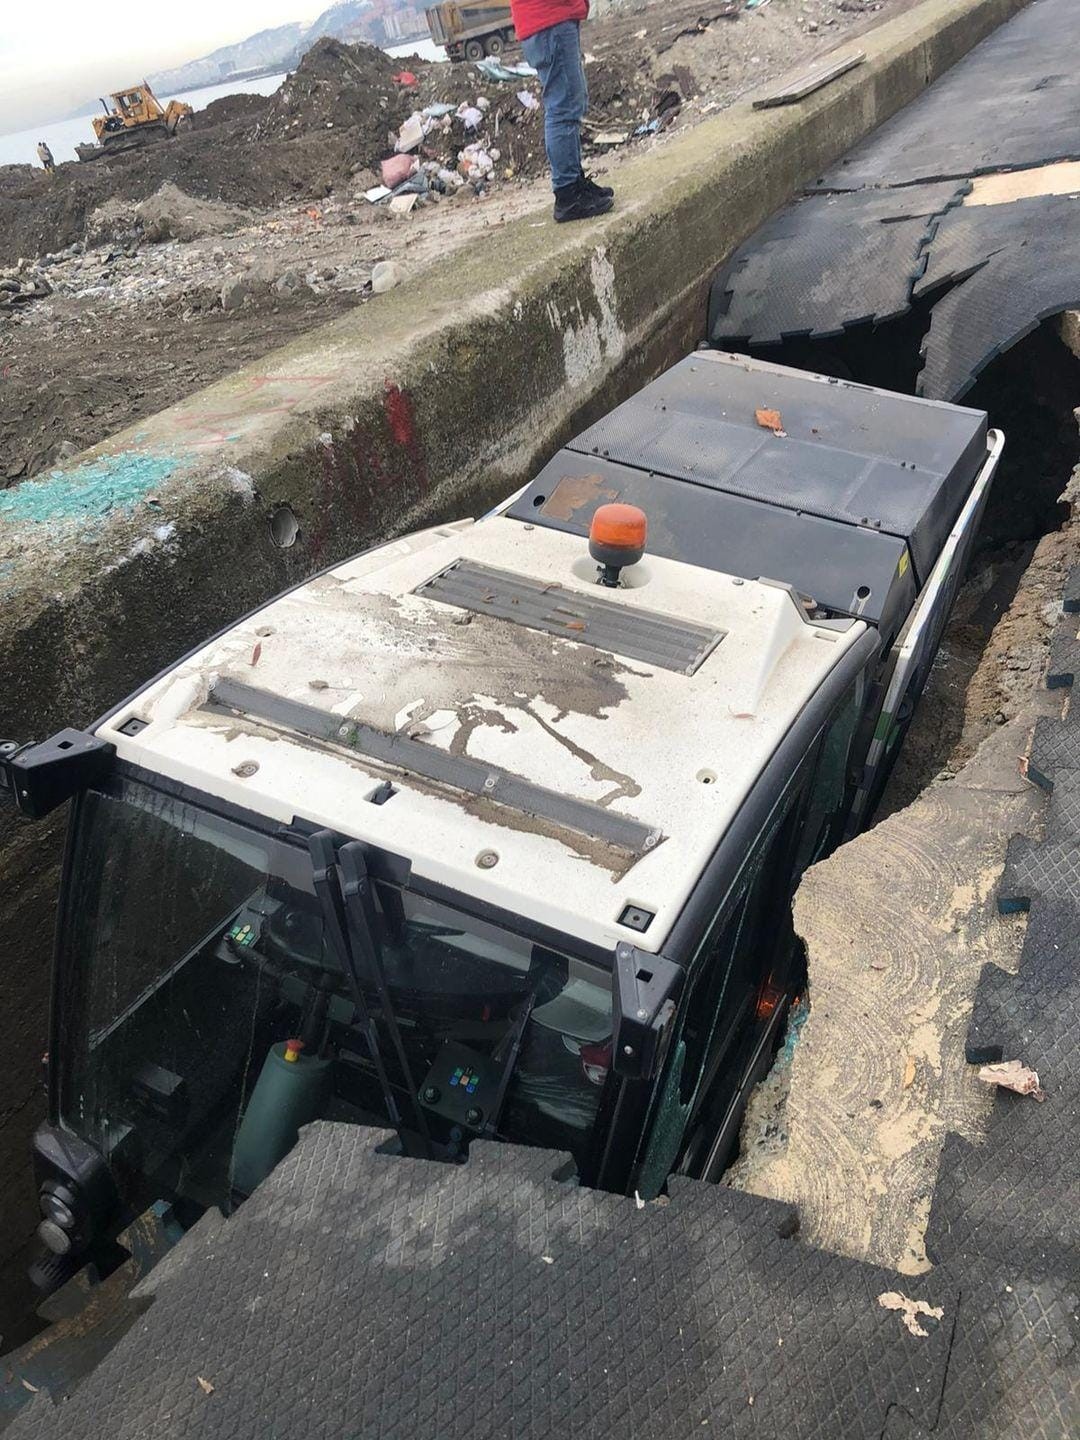 Rize’de deniz dolgusundaki beton yarılınca araç içerisine düştü #rize